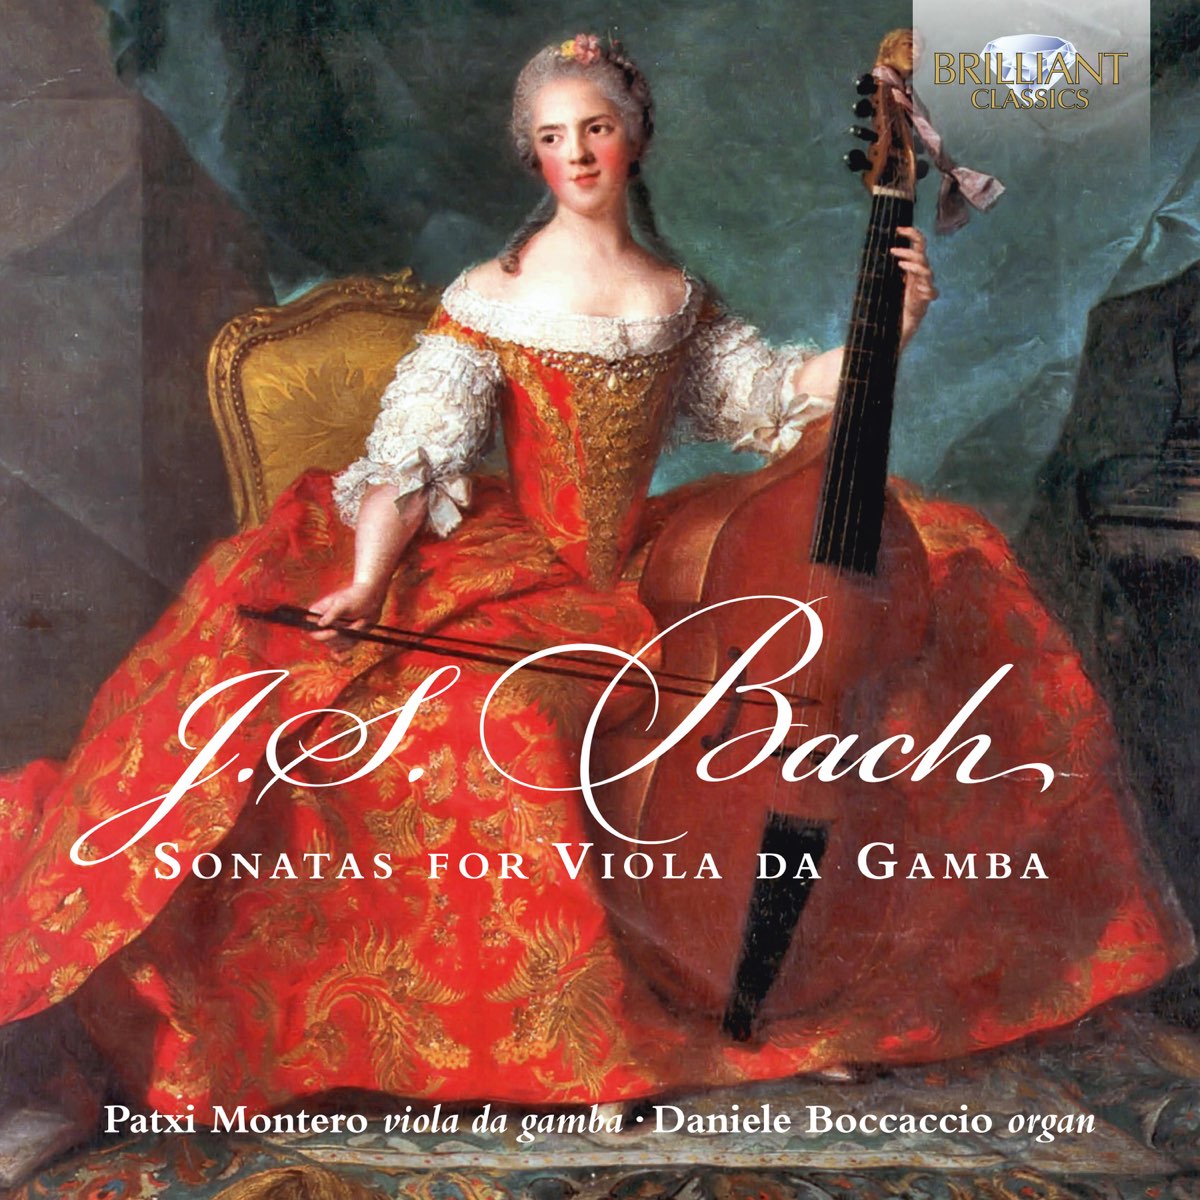 J.S. Bach: Sonatas for Viola da Gamba - Album by Patxi Montero & Daniele  Boccaccio - Apple Music